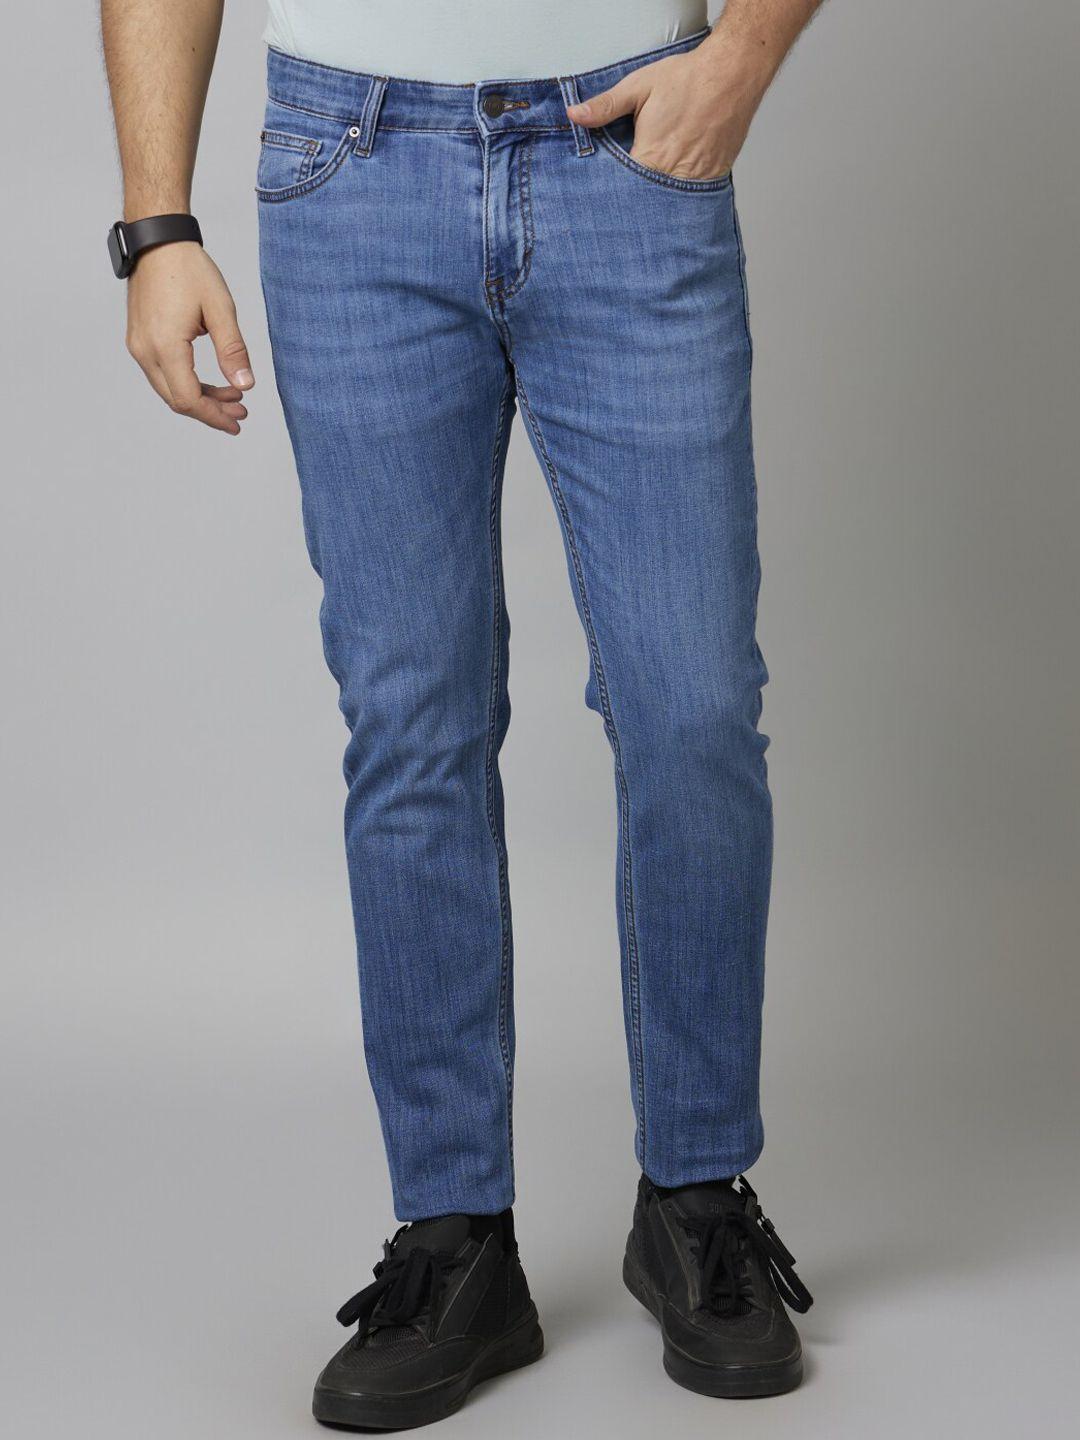 celio men jean slim fit light fade cotton stretchable jeans